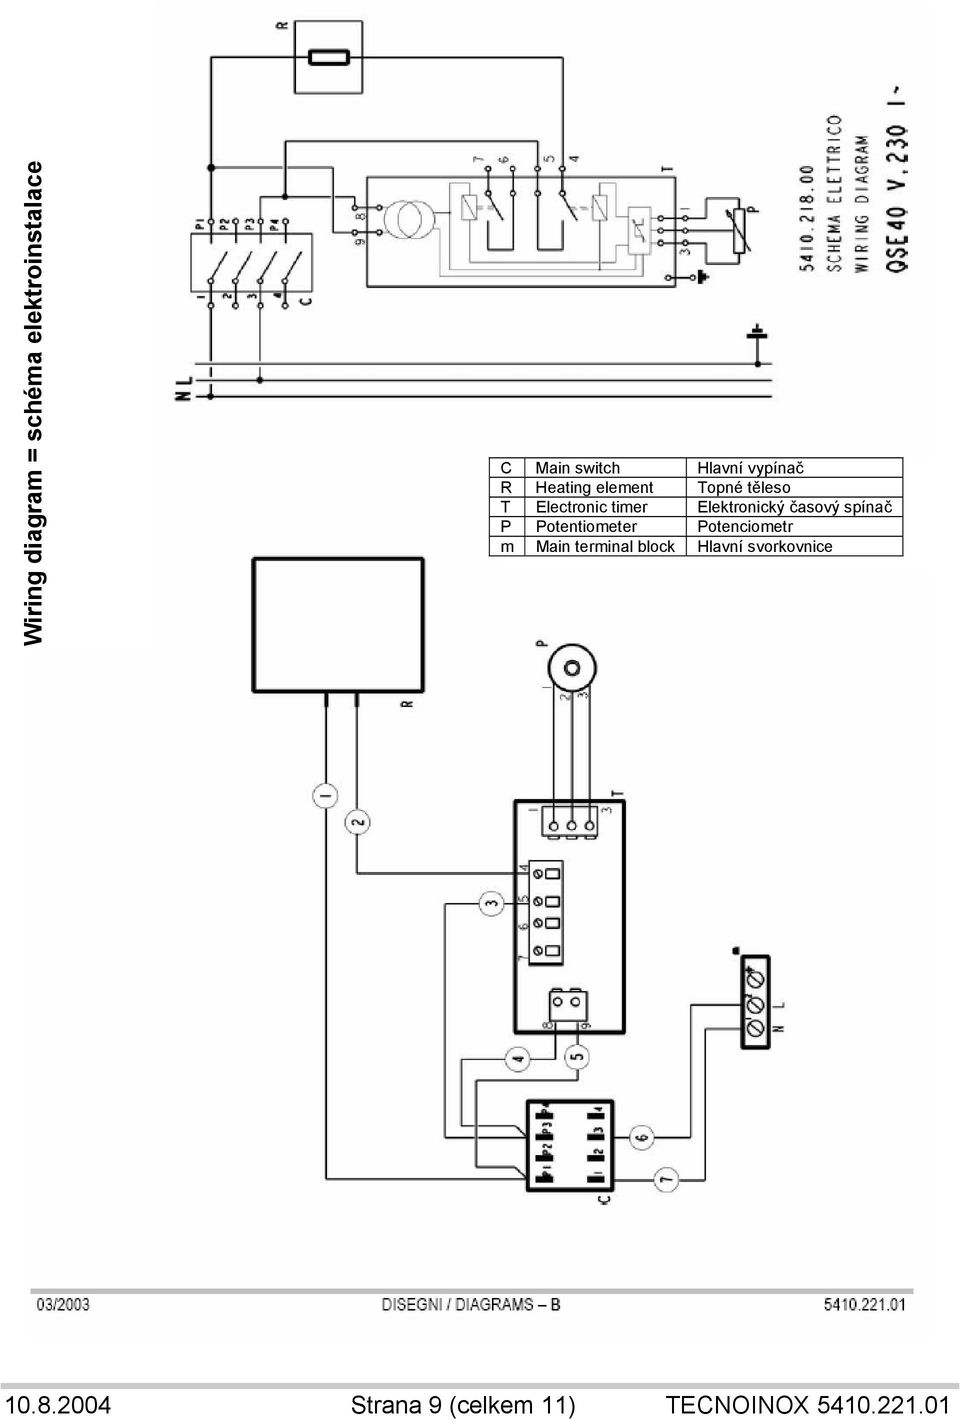 Elektronický časový spínač P Potentiometer Potenciometr m Main